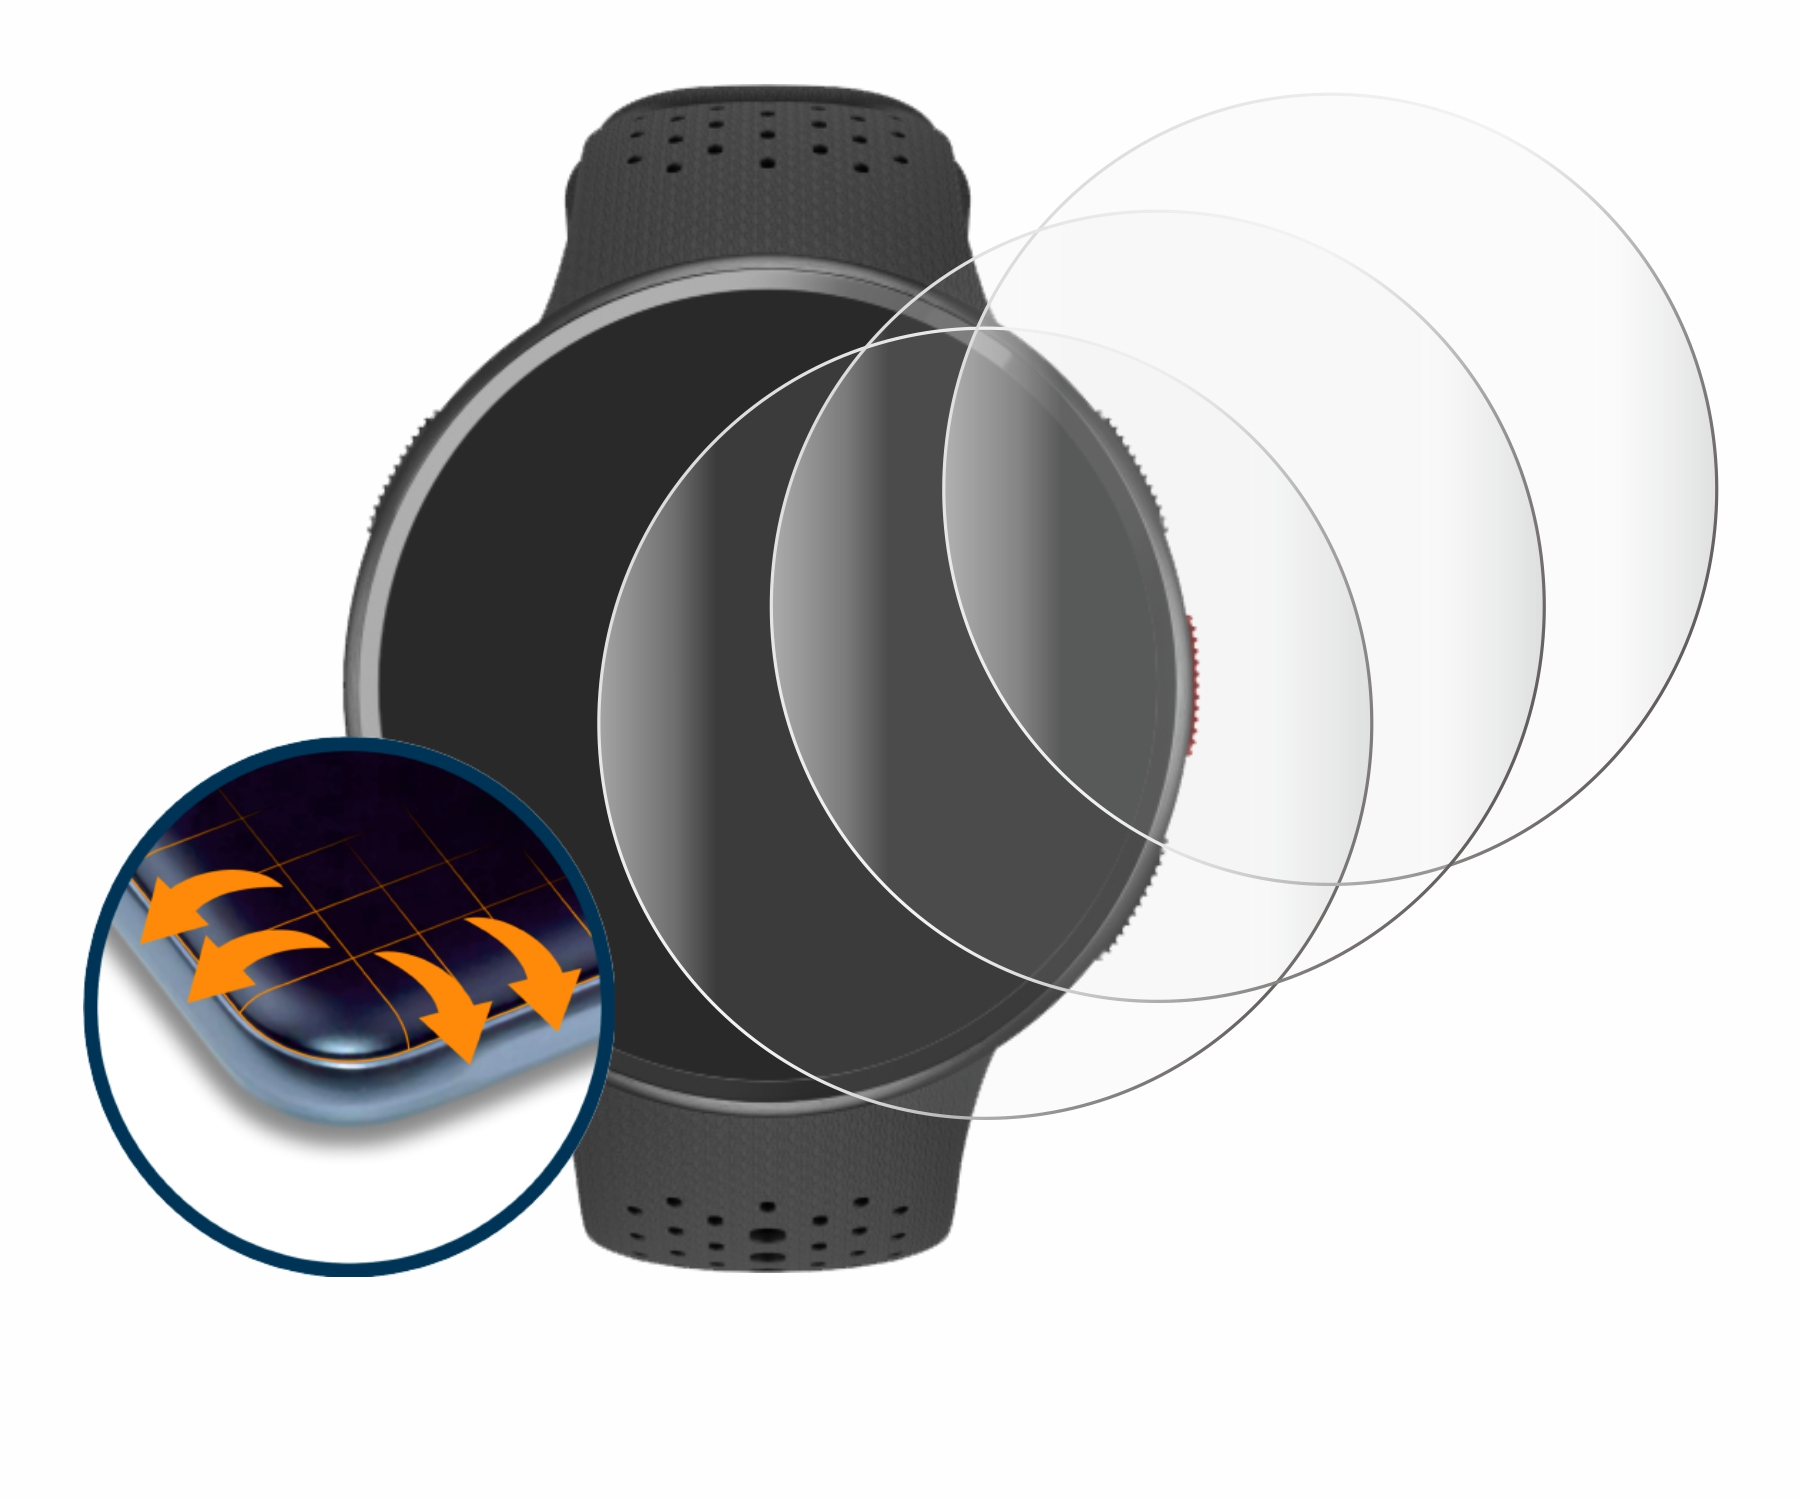 SAVVIES Full-Cover Polar Pro) 4x Pacer 3D Schutzfolie(für Flex Curved